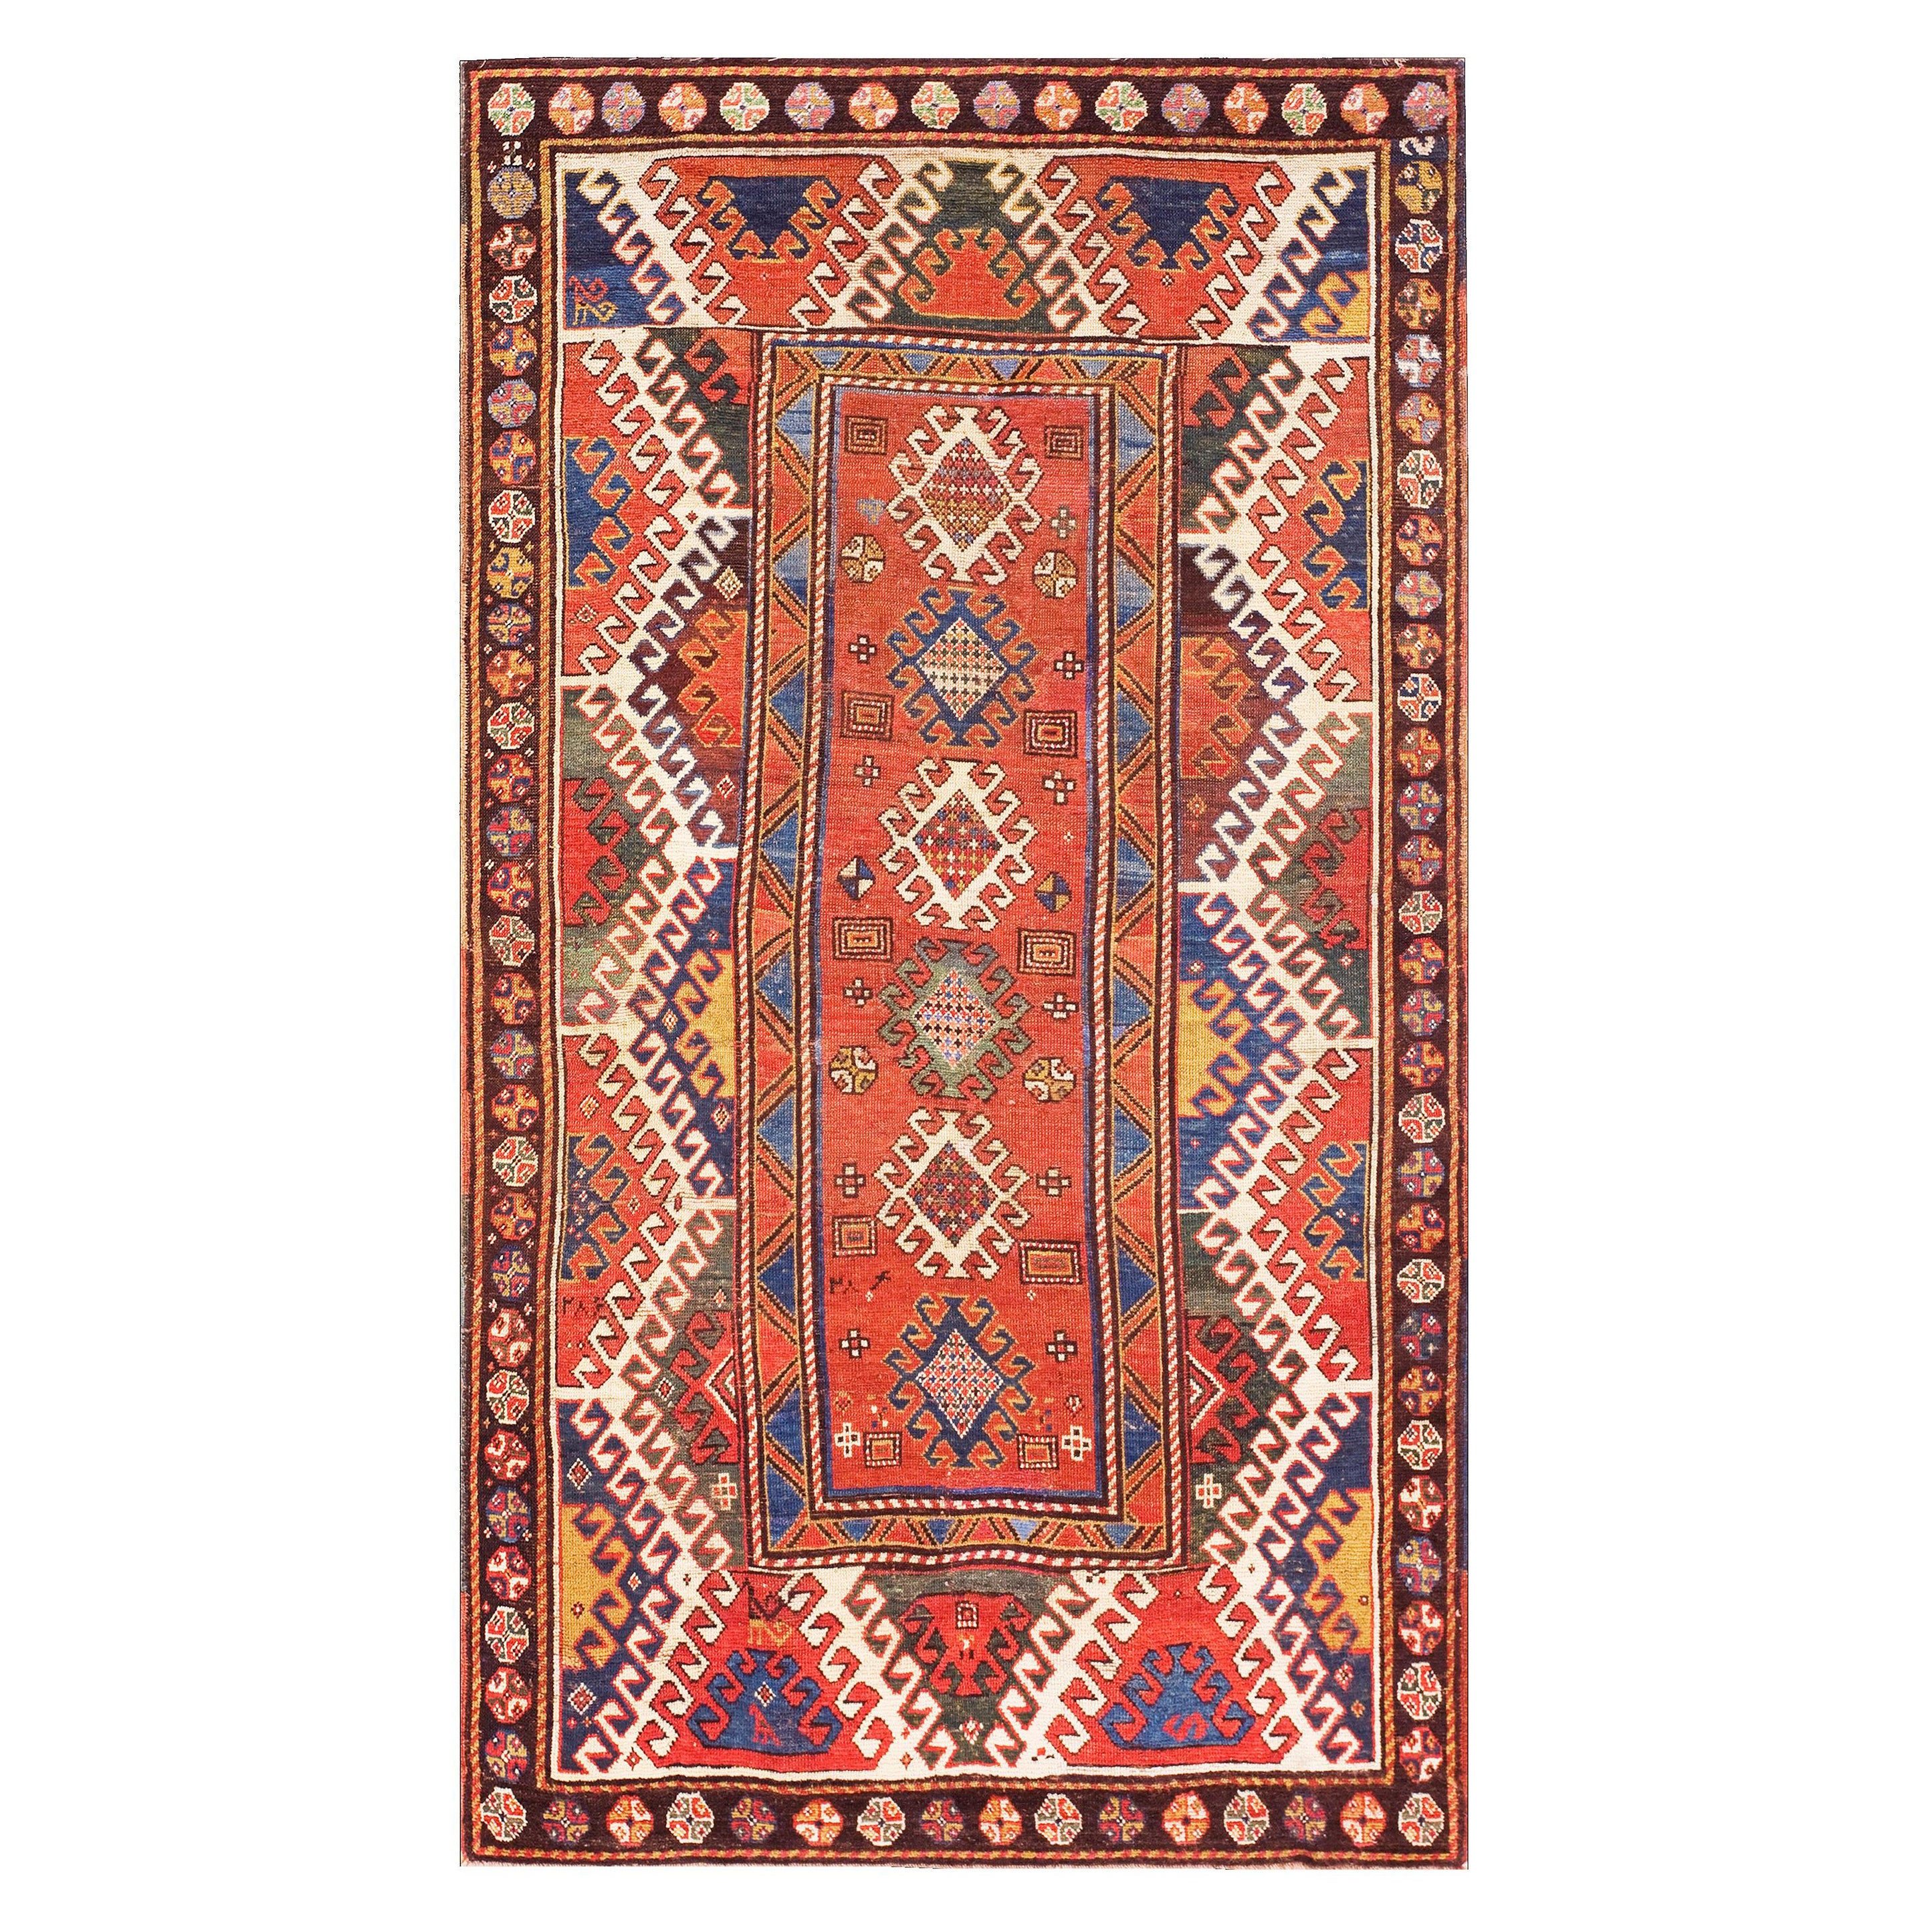 19th Century Caucasian Bordjalou Kazak Carpet ( 4'3" x 7'5" - 130 x 226 )